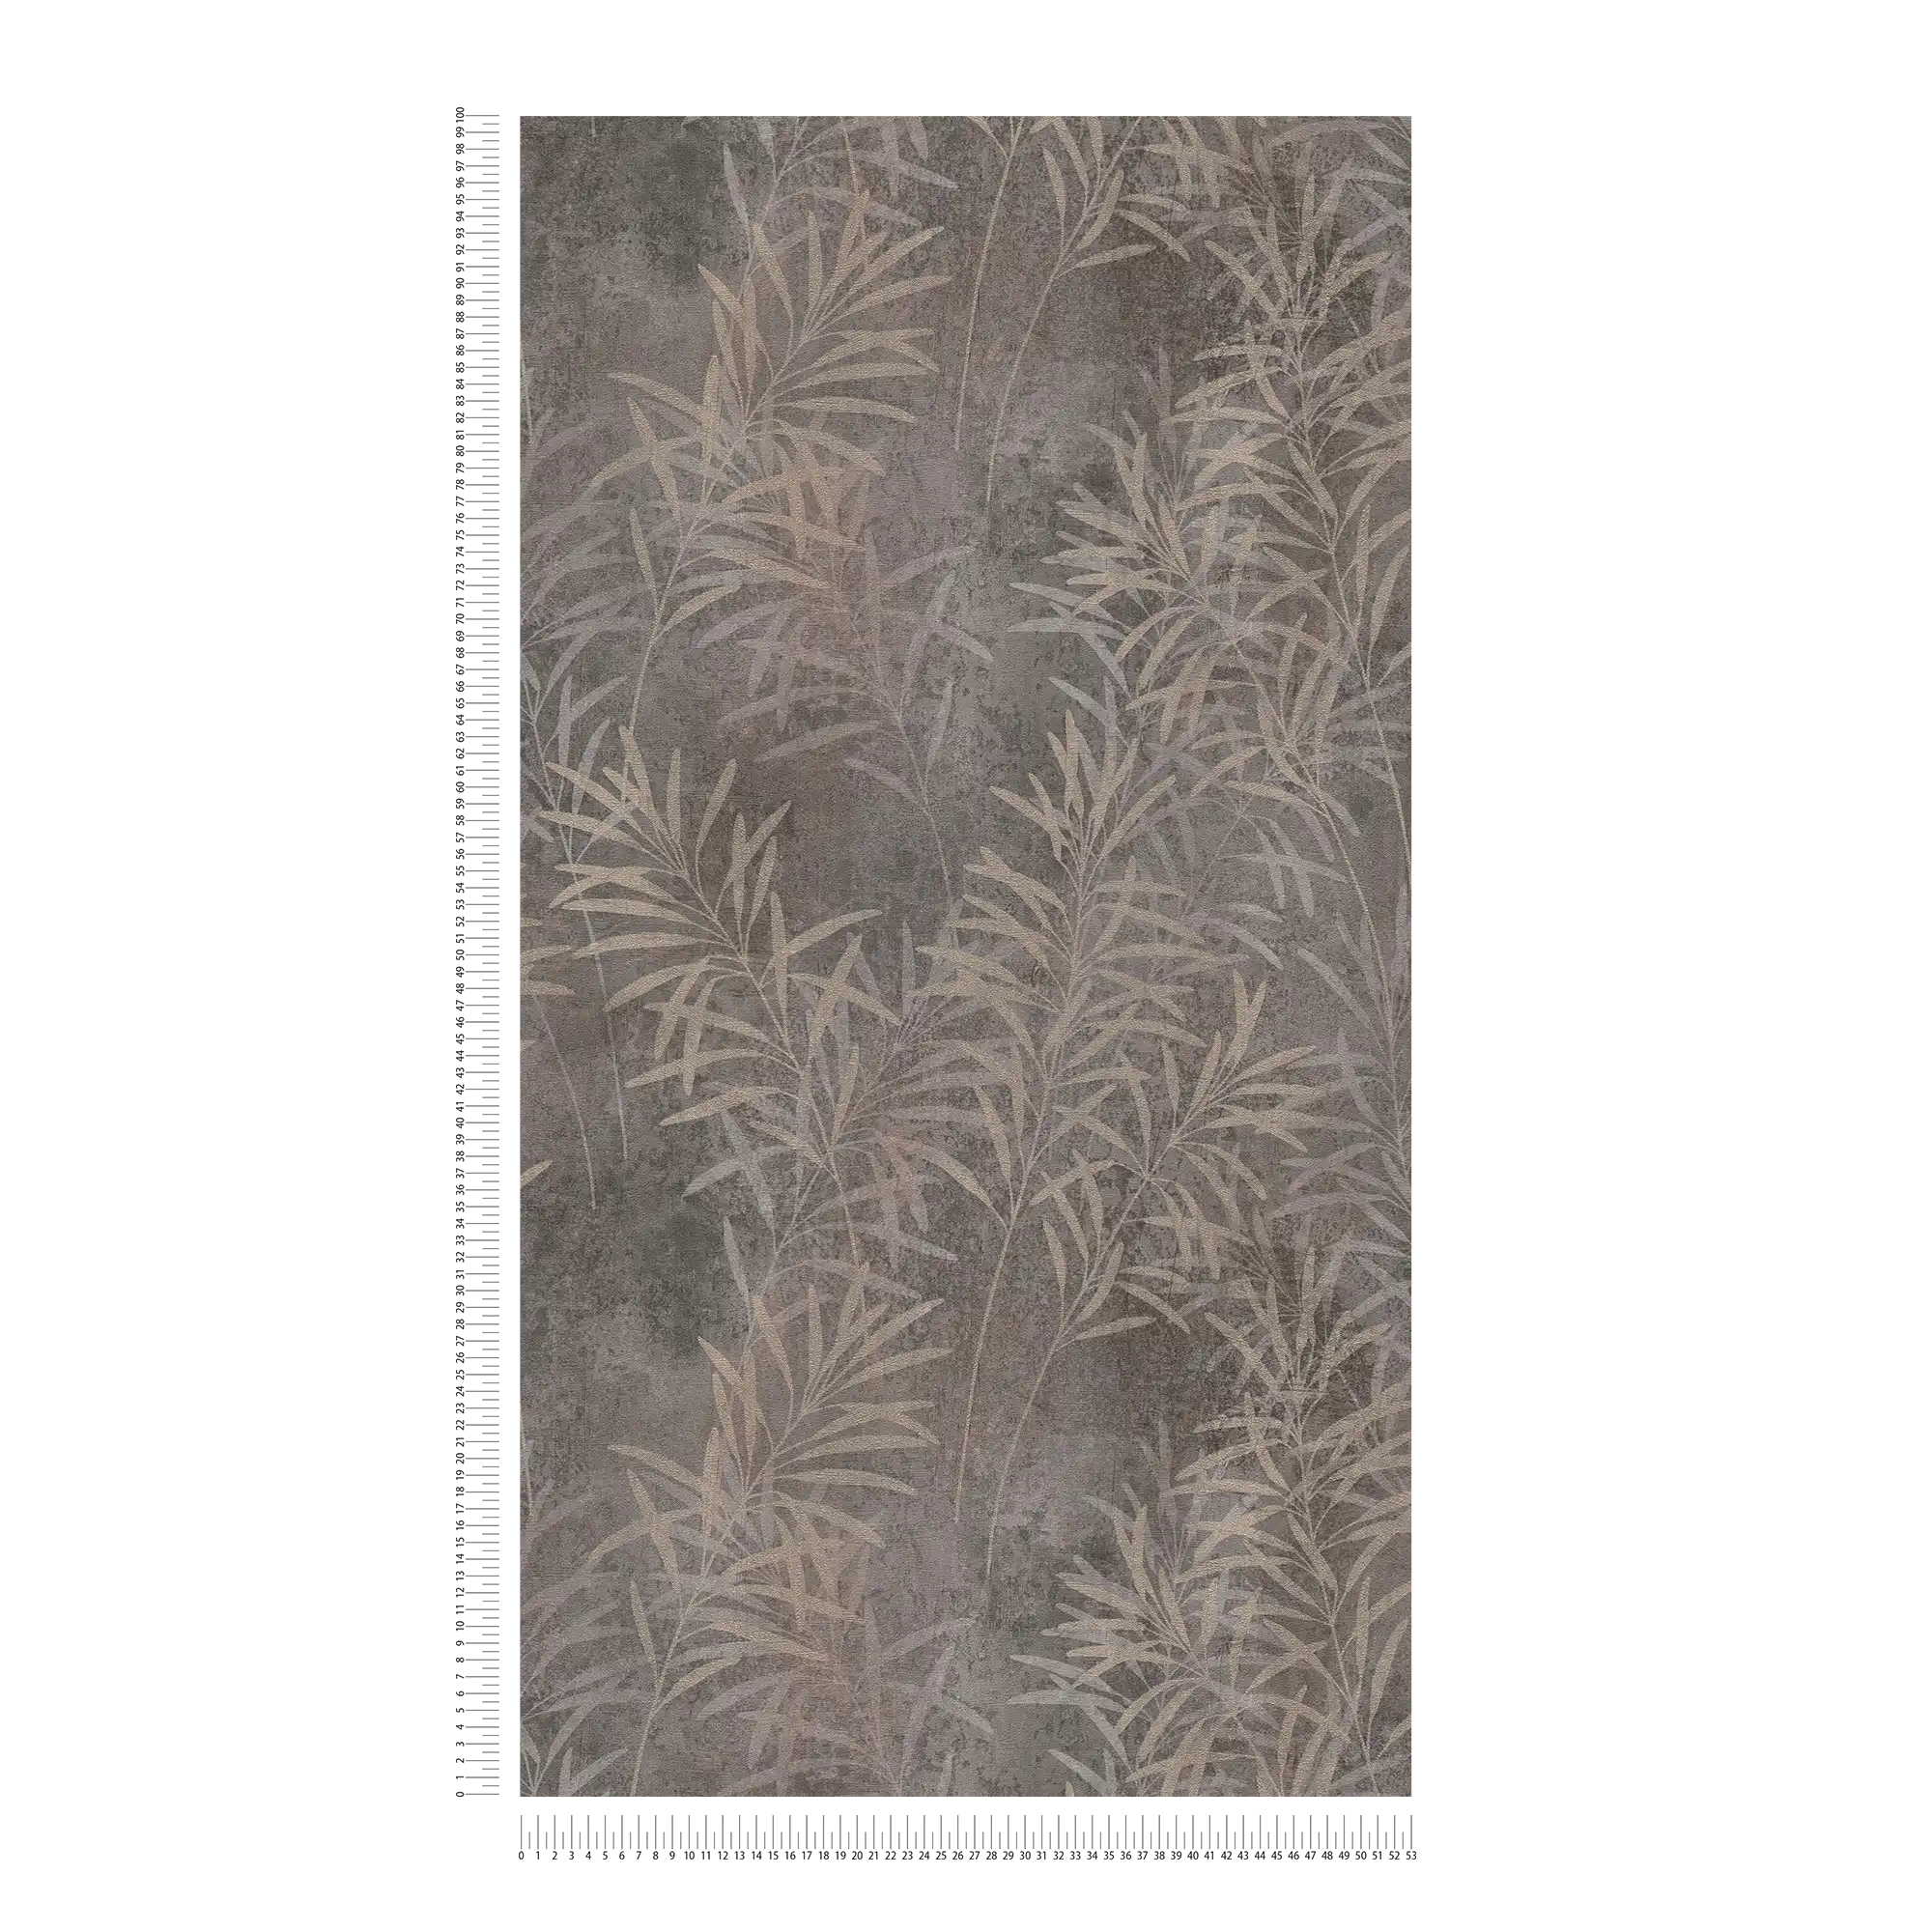             Papel pintado no tejido con motivos de hierba y estructura fina - gris, beige, metálico
        